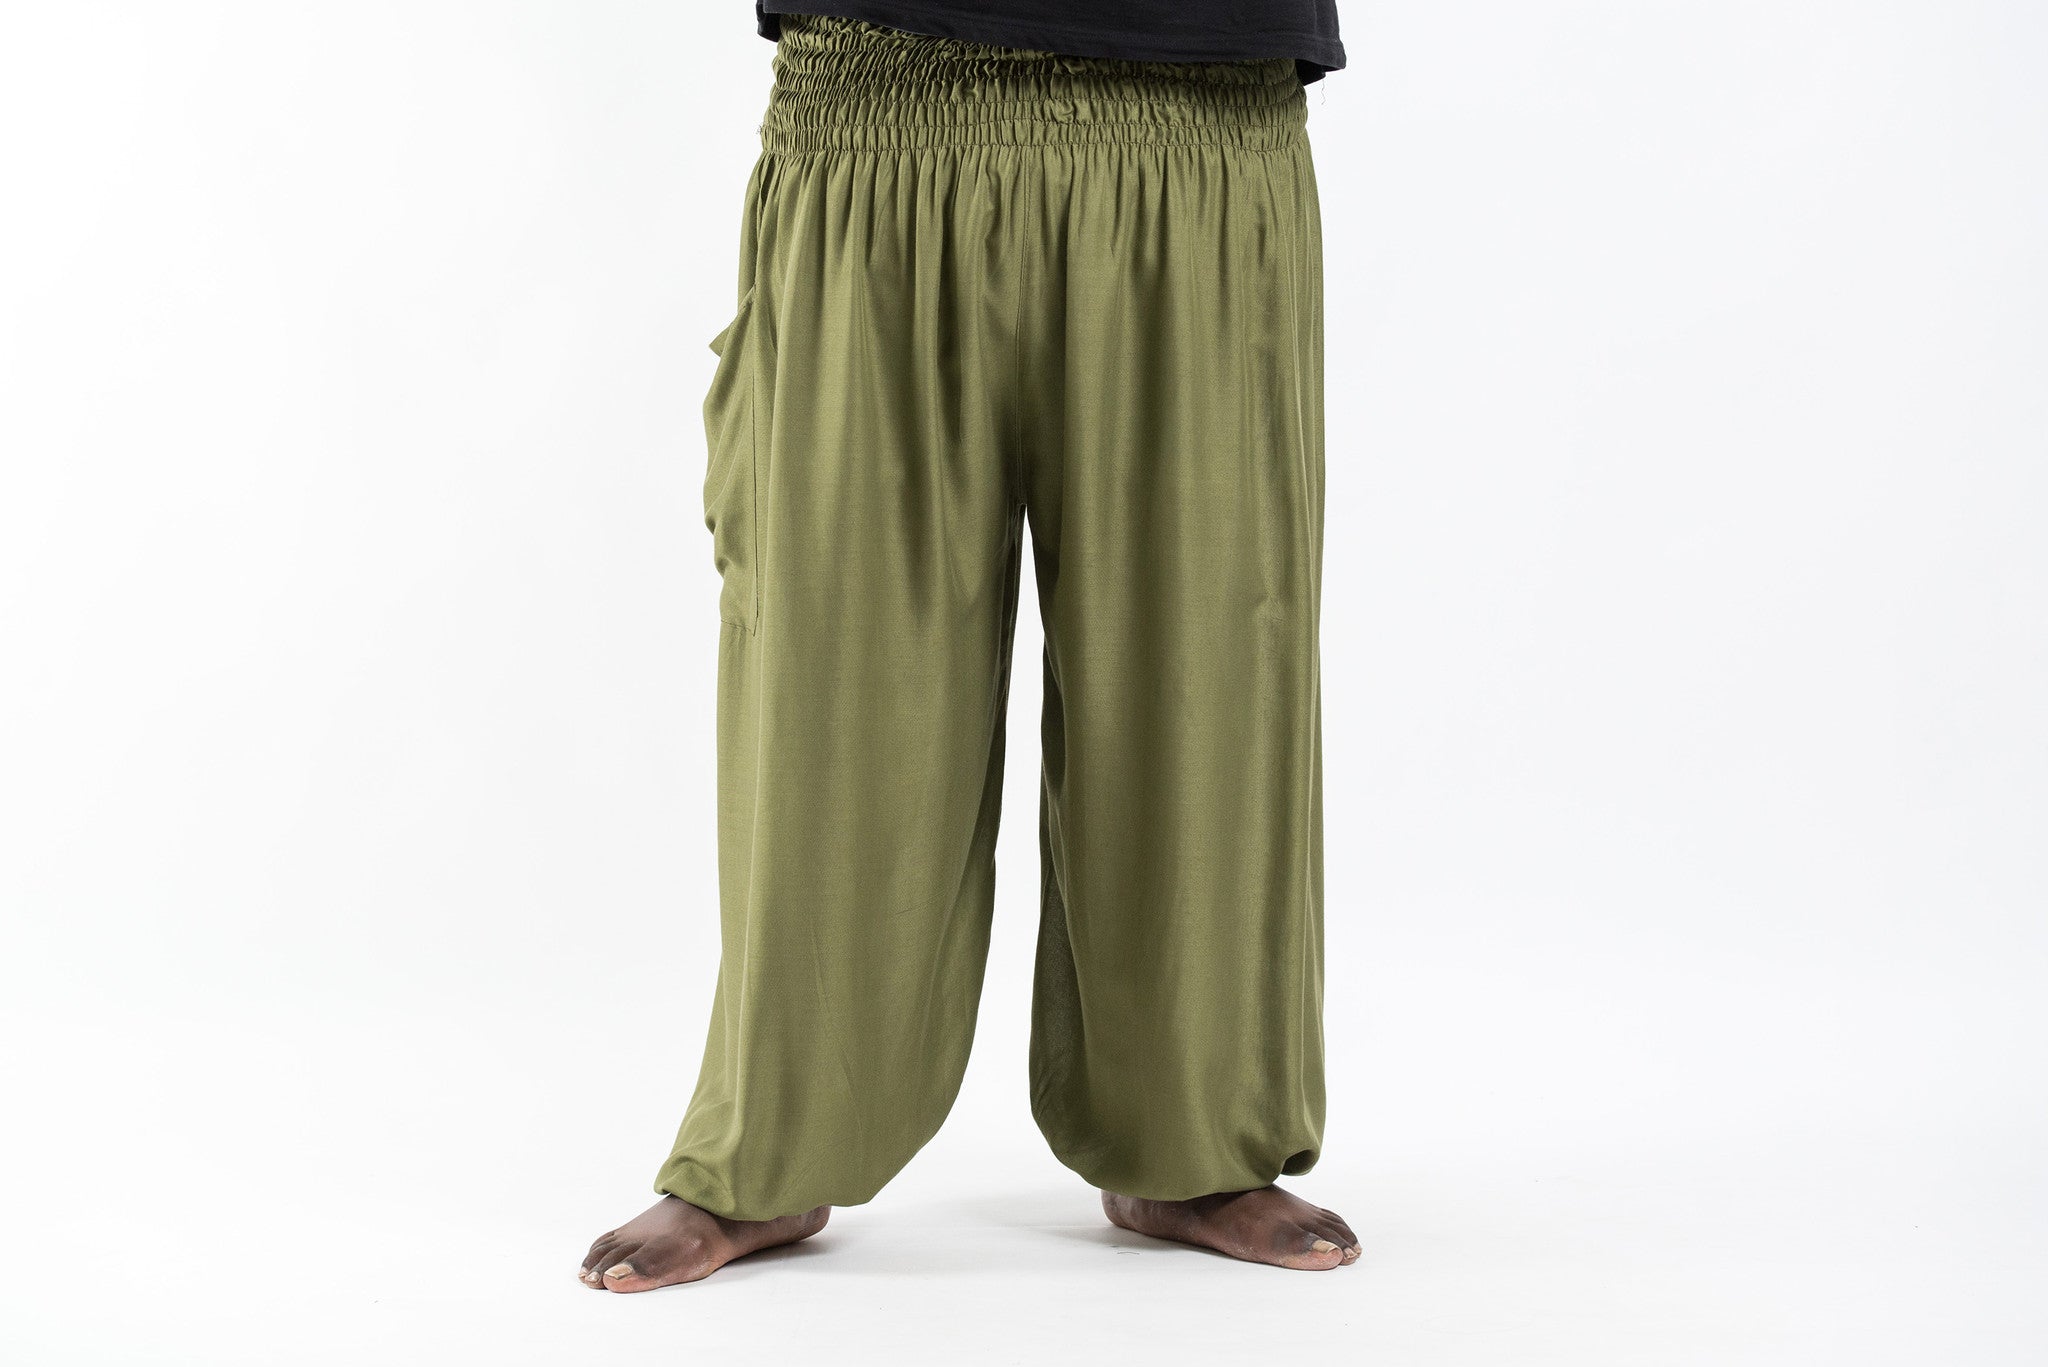 Plus Size Solid Color Men's Harem Pants in Olive